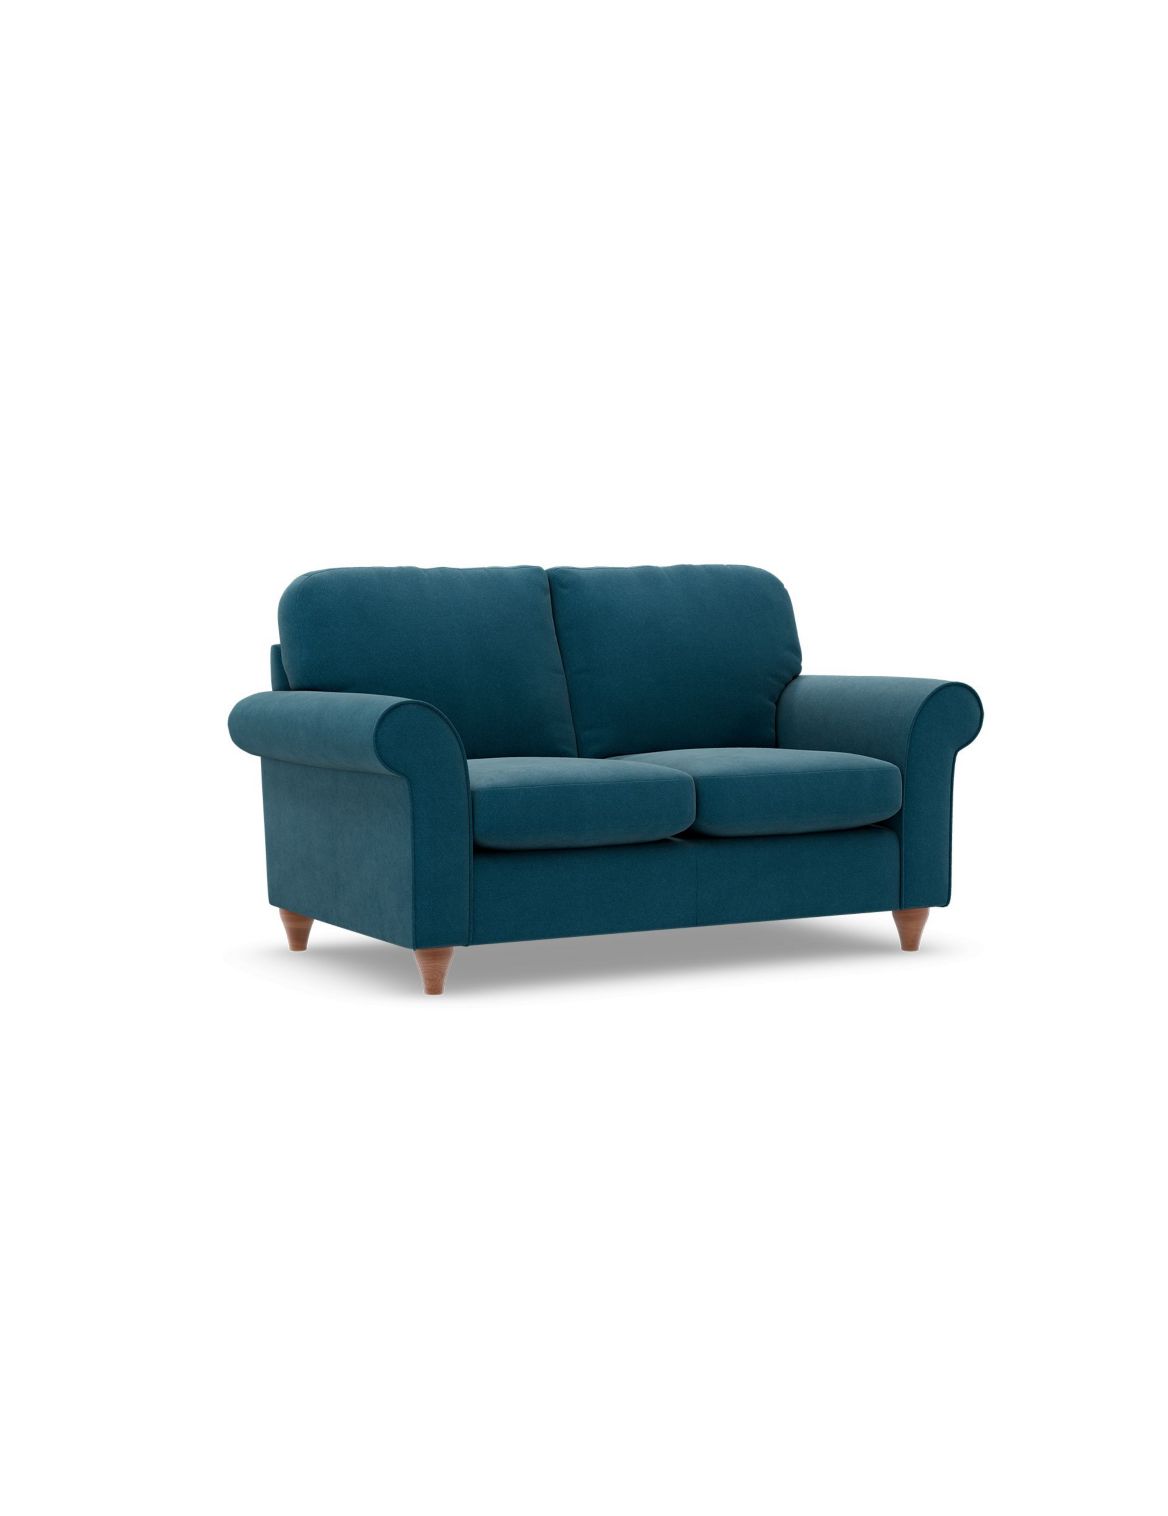 Olivia Compact Sofa blue